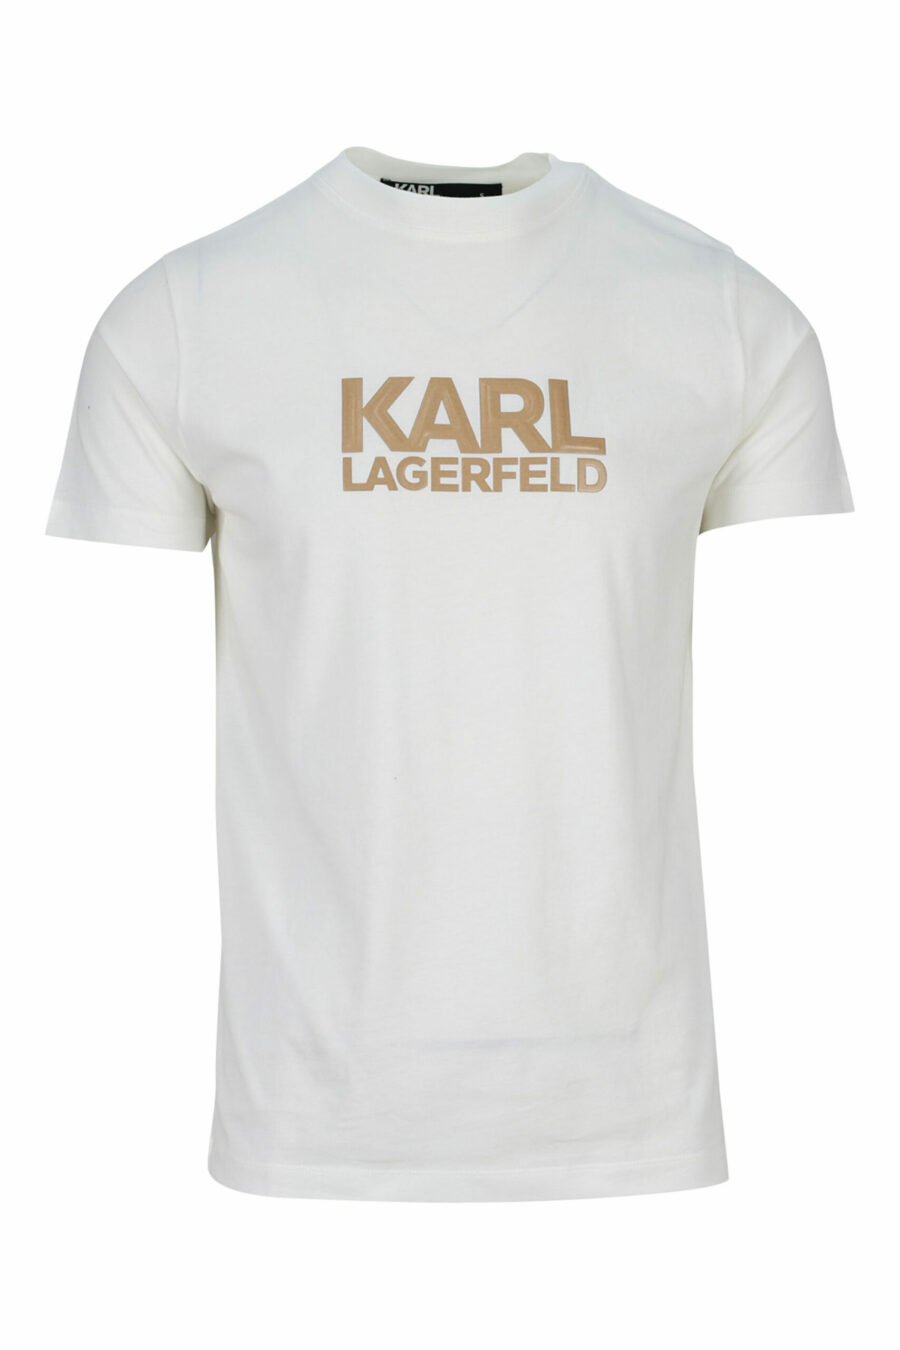 T-shirt beige avec maxilogo en caoutchouc monochrome - 4062226679404 scaled